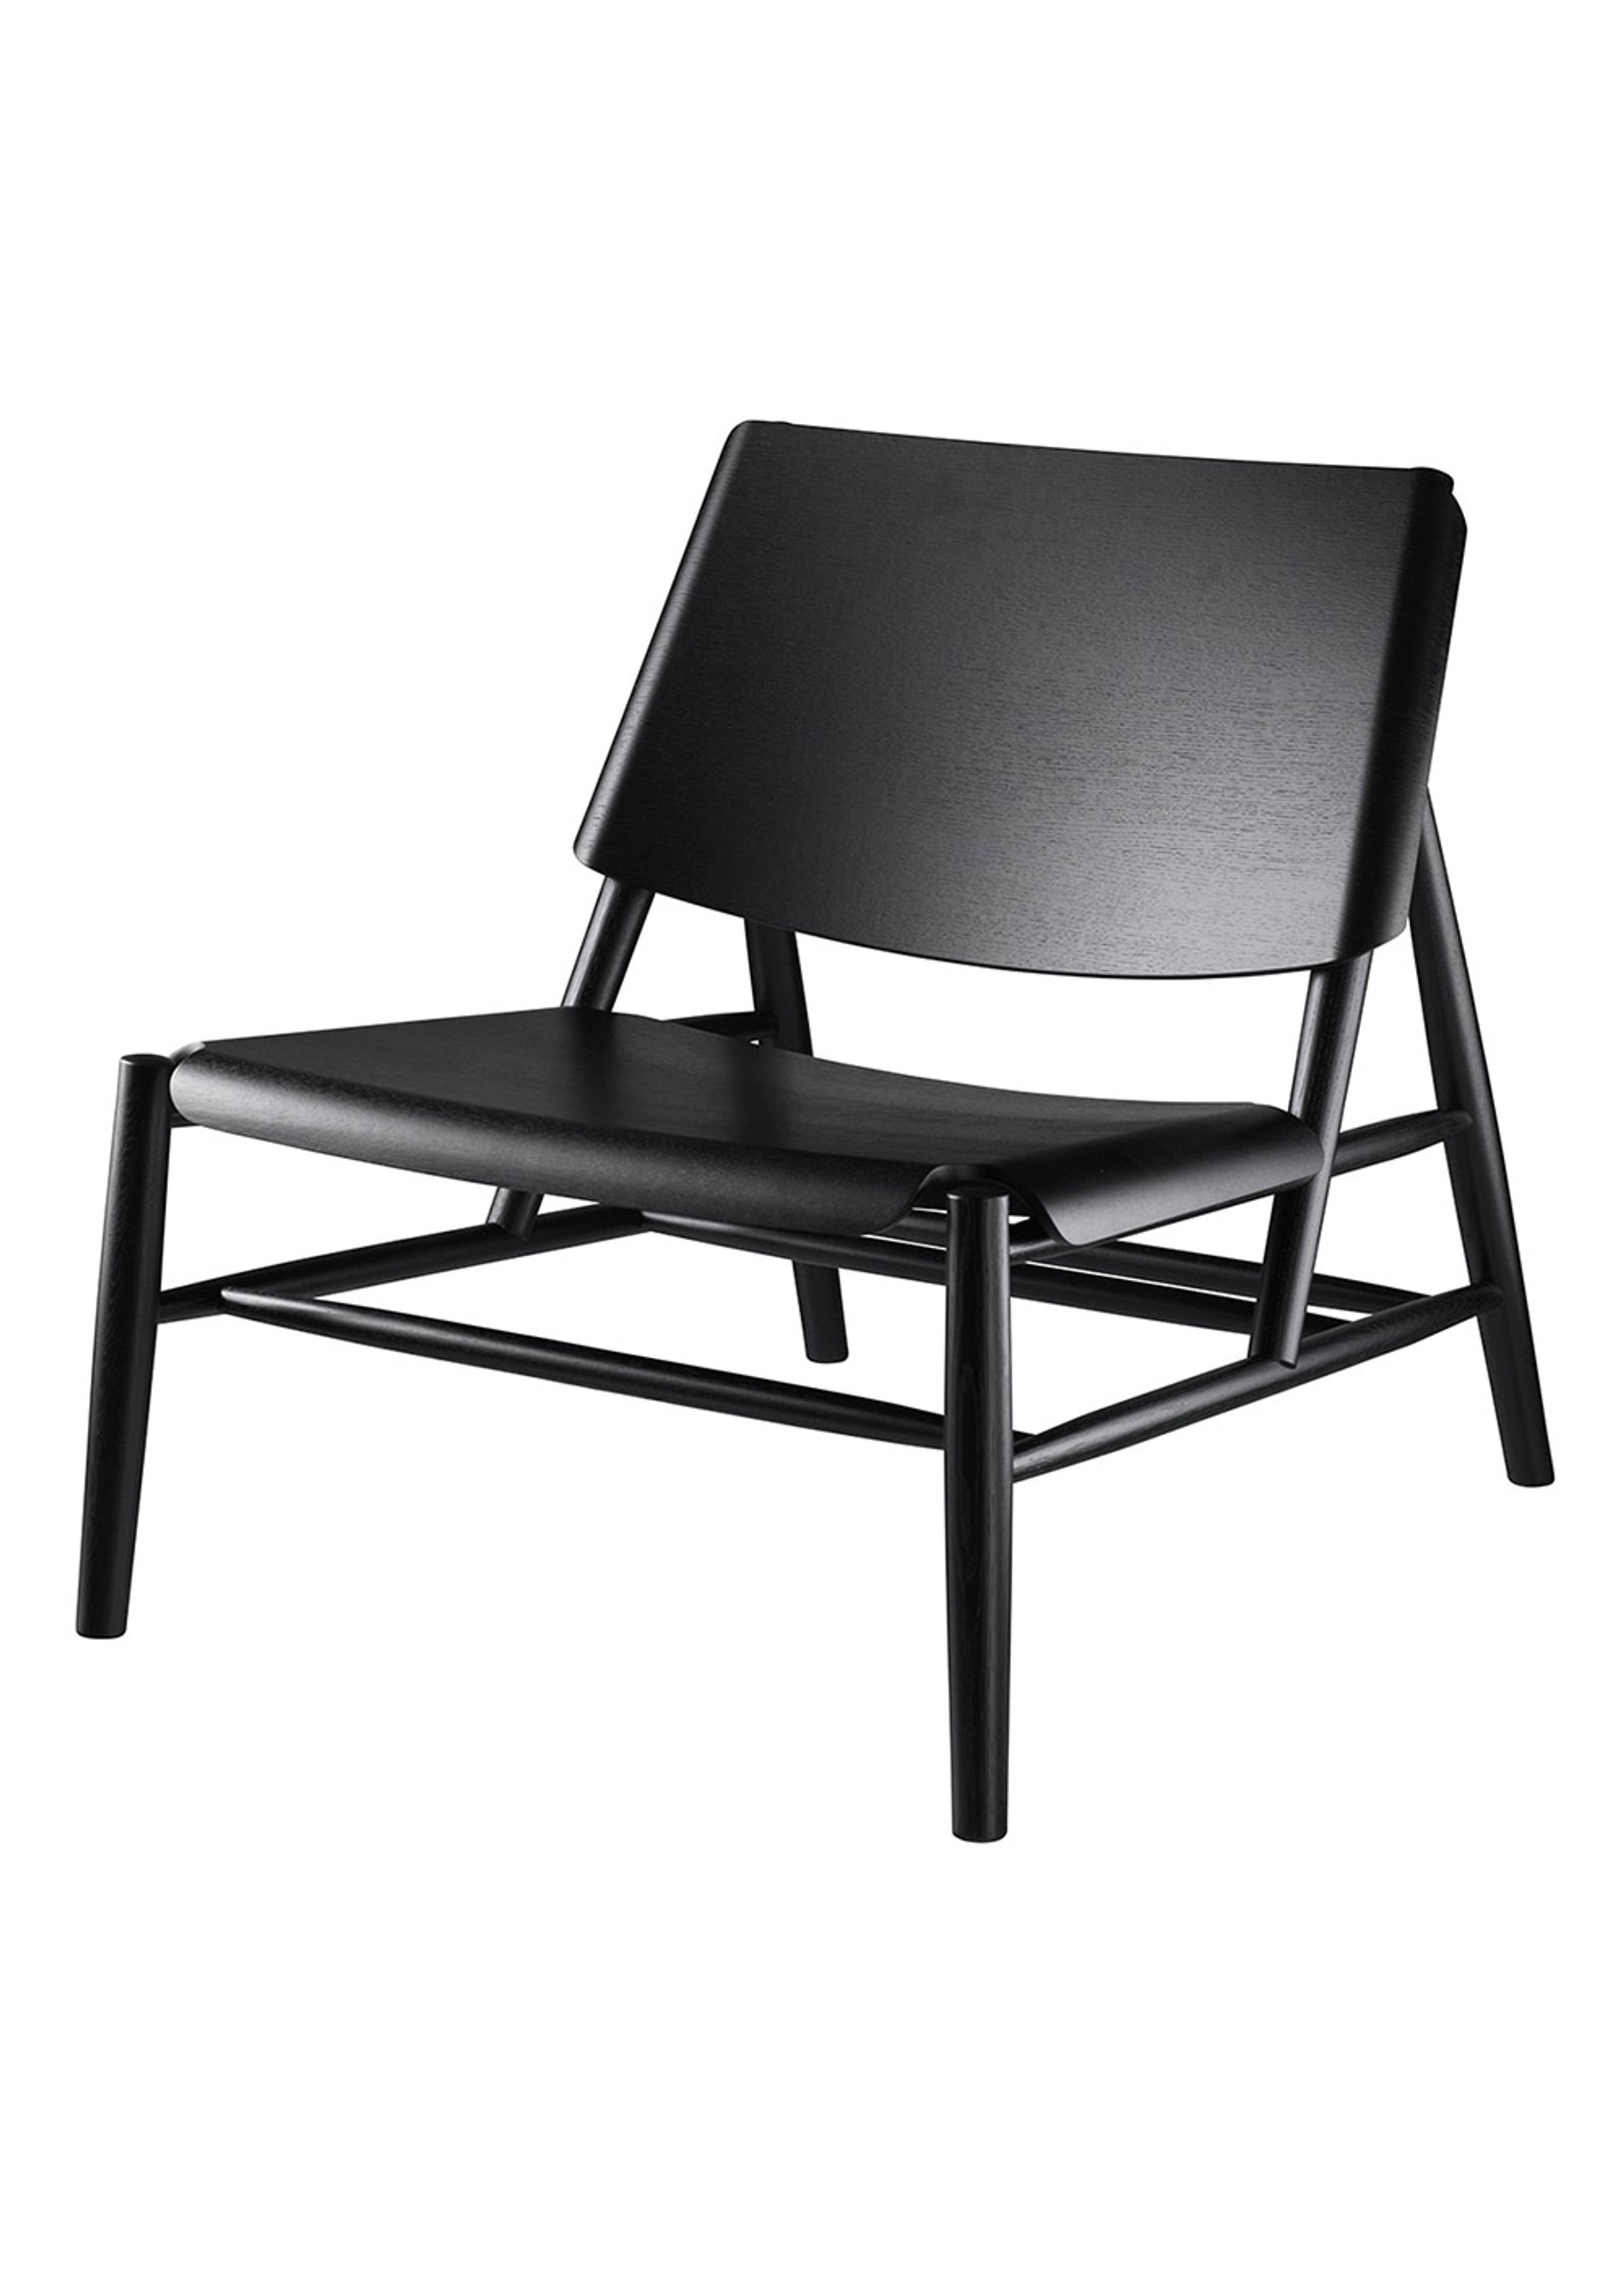 FDB Møbler / Furniture - Stuhl - J162 by Thomas E. Alken - Oak/Black